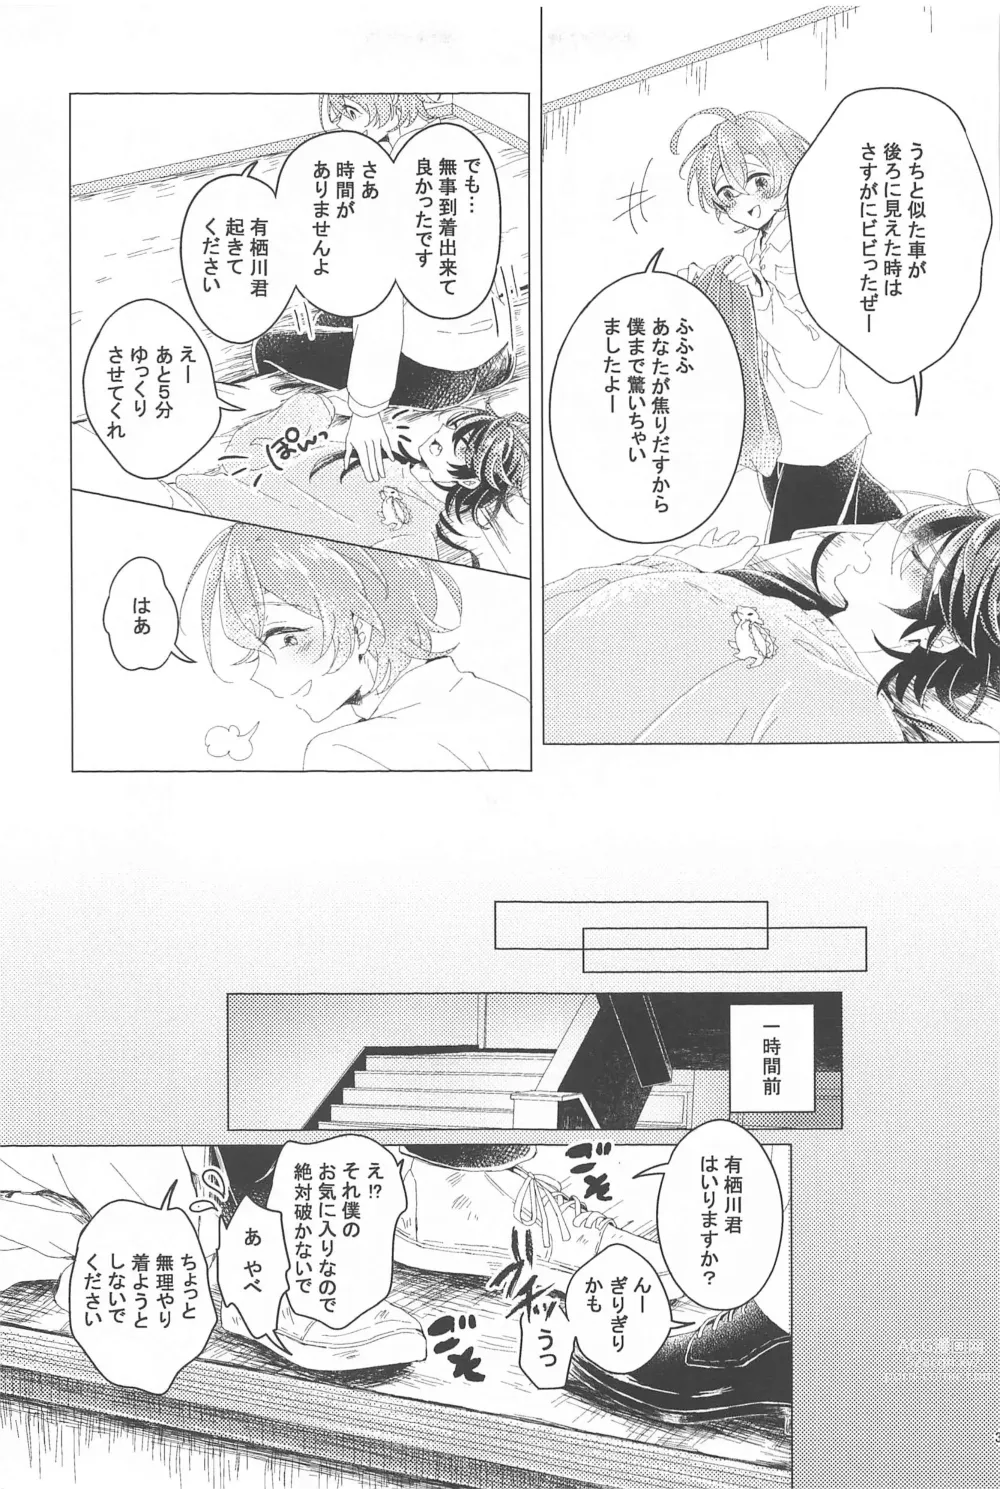 Page 30 of doujinshi Hajimete no  Otomodachi